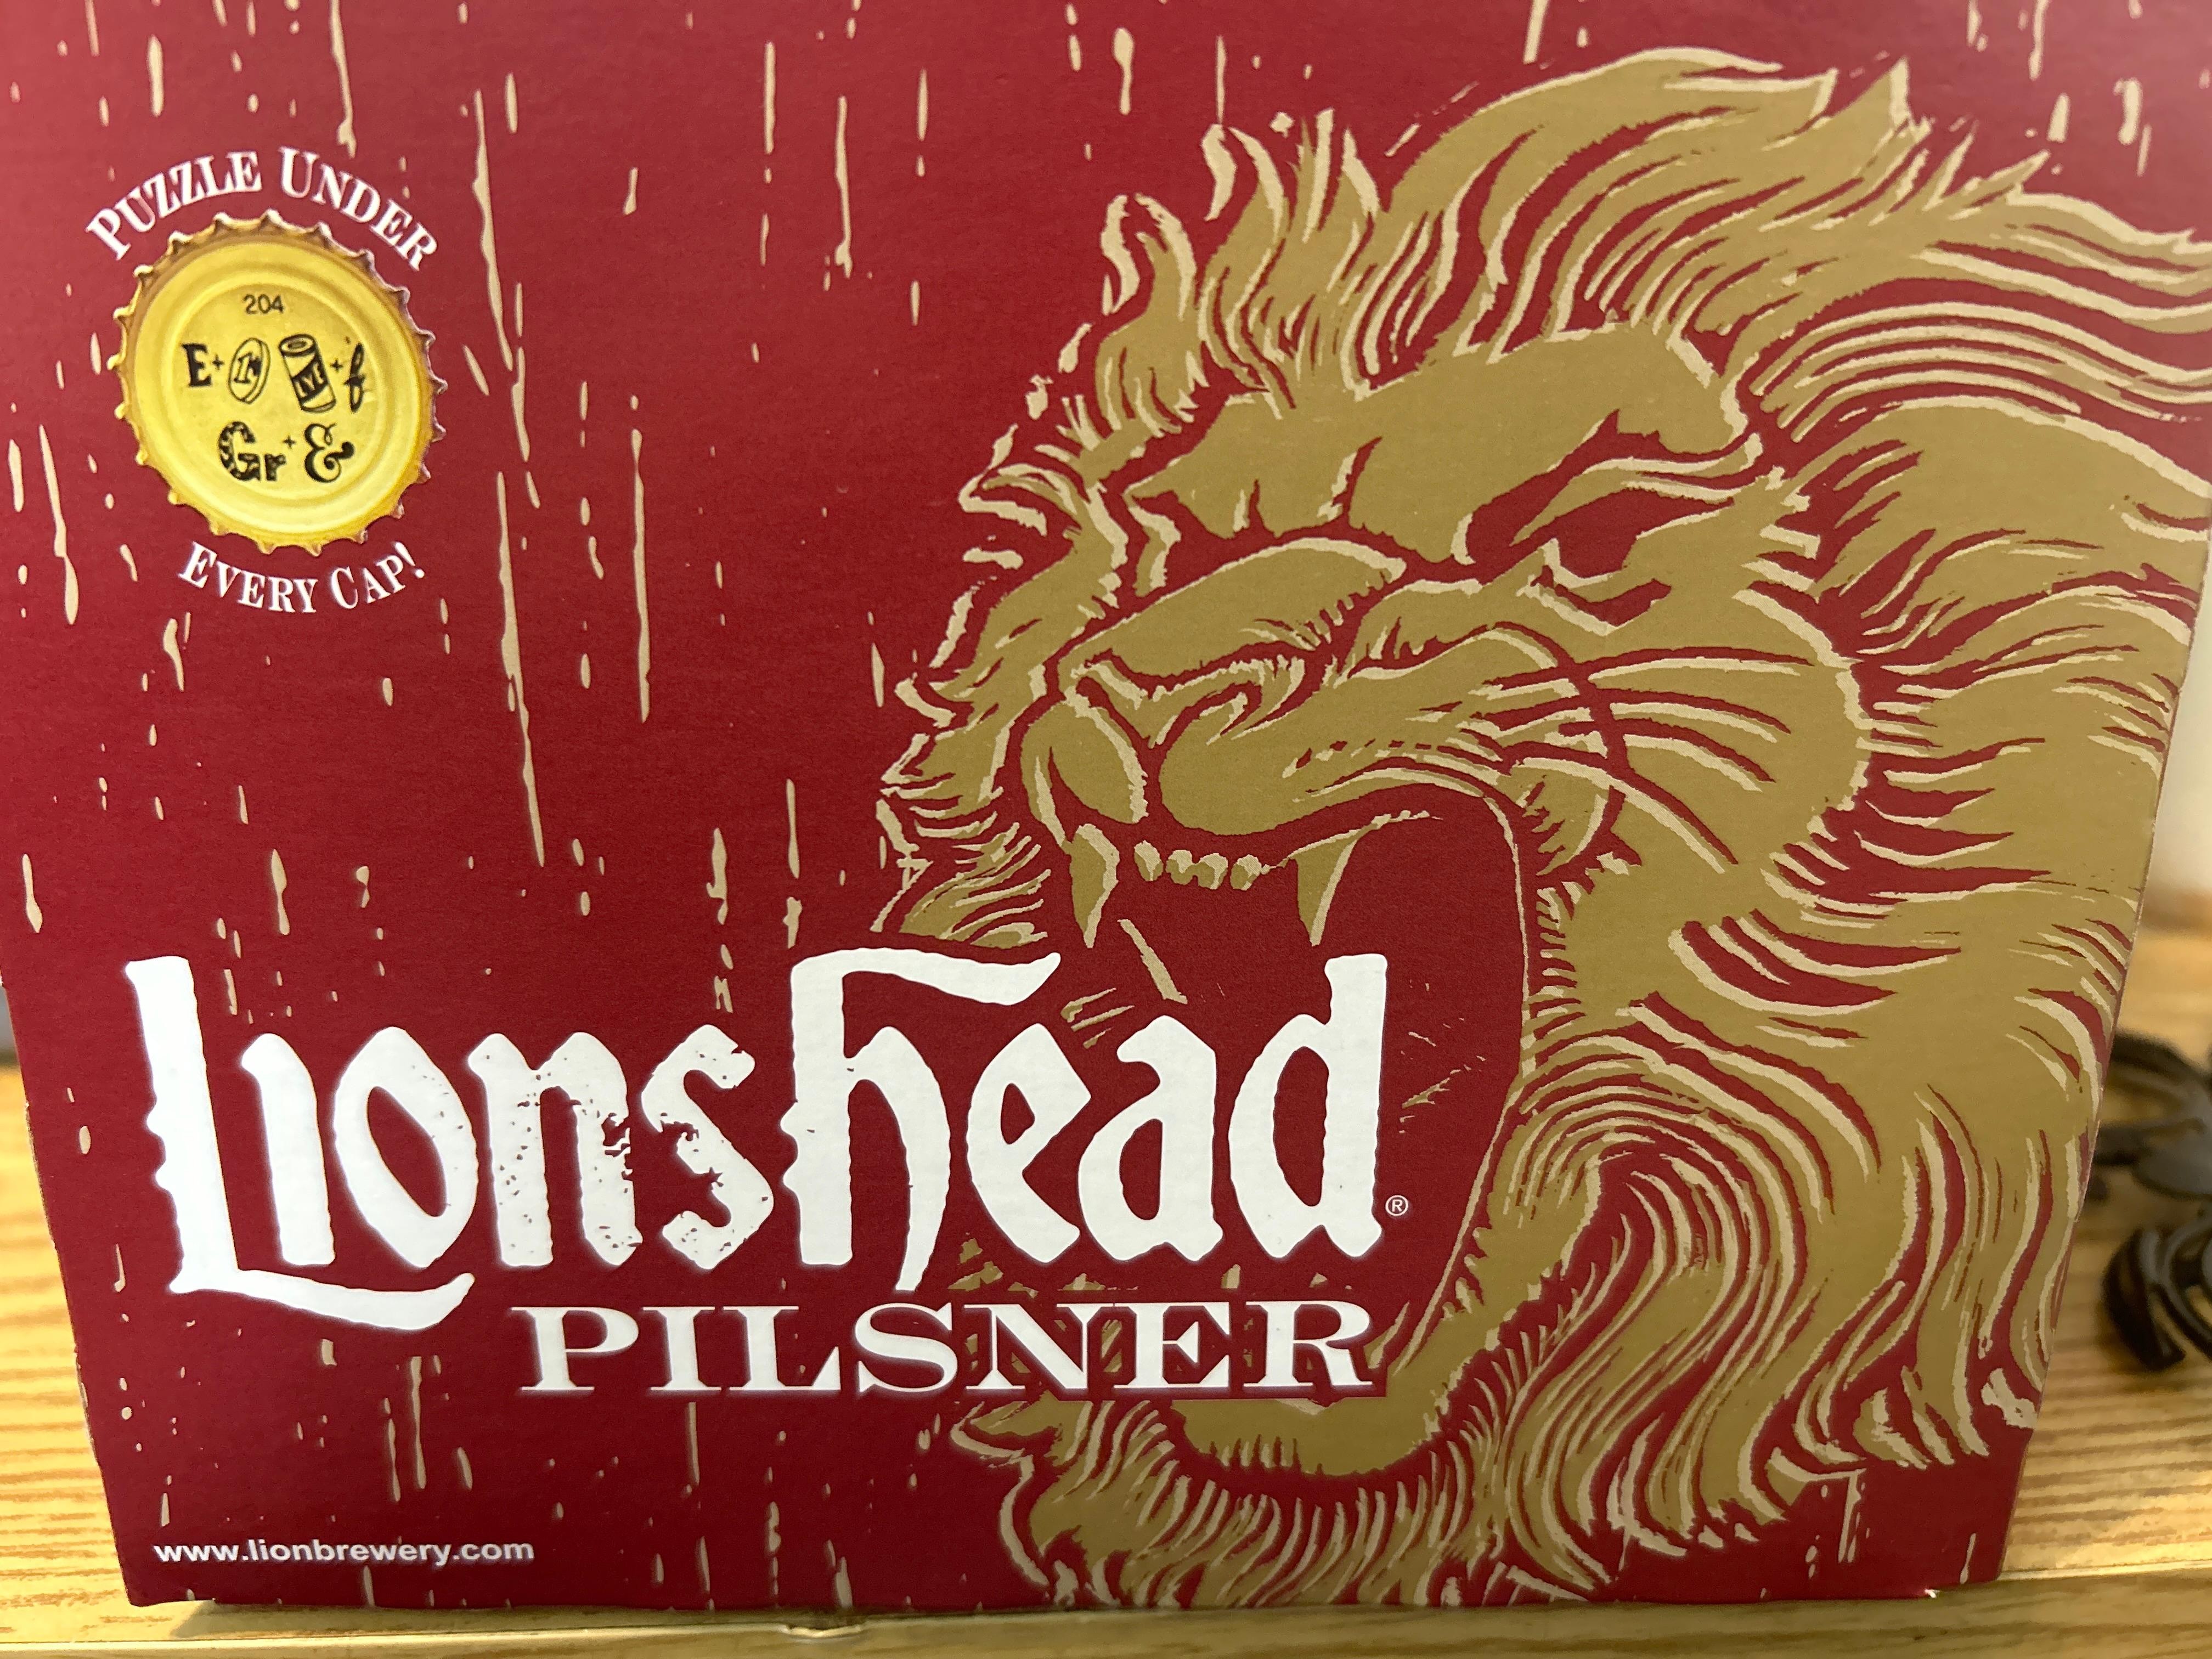 Lions Head Pilsner